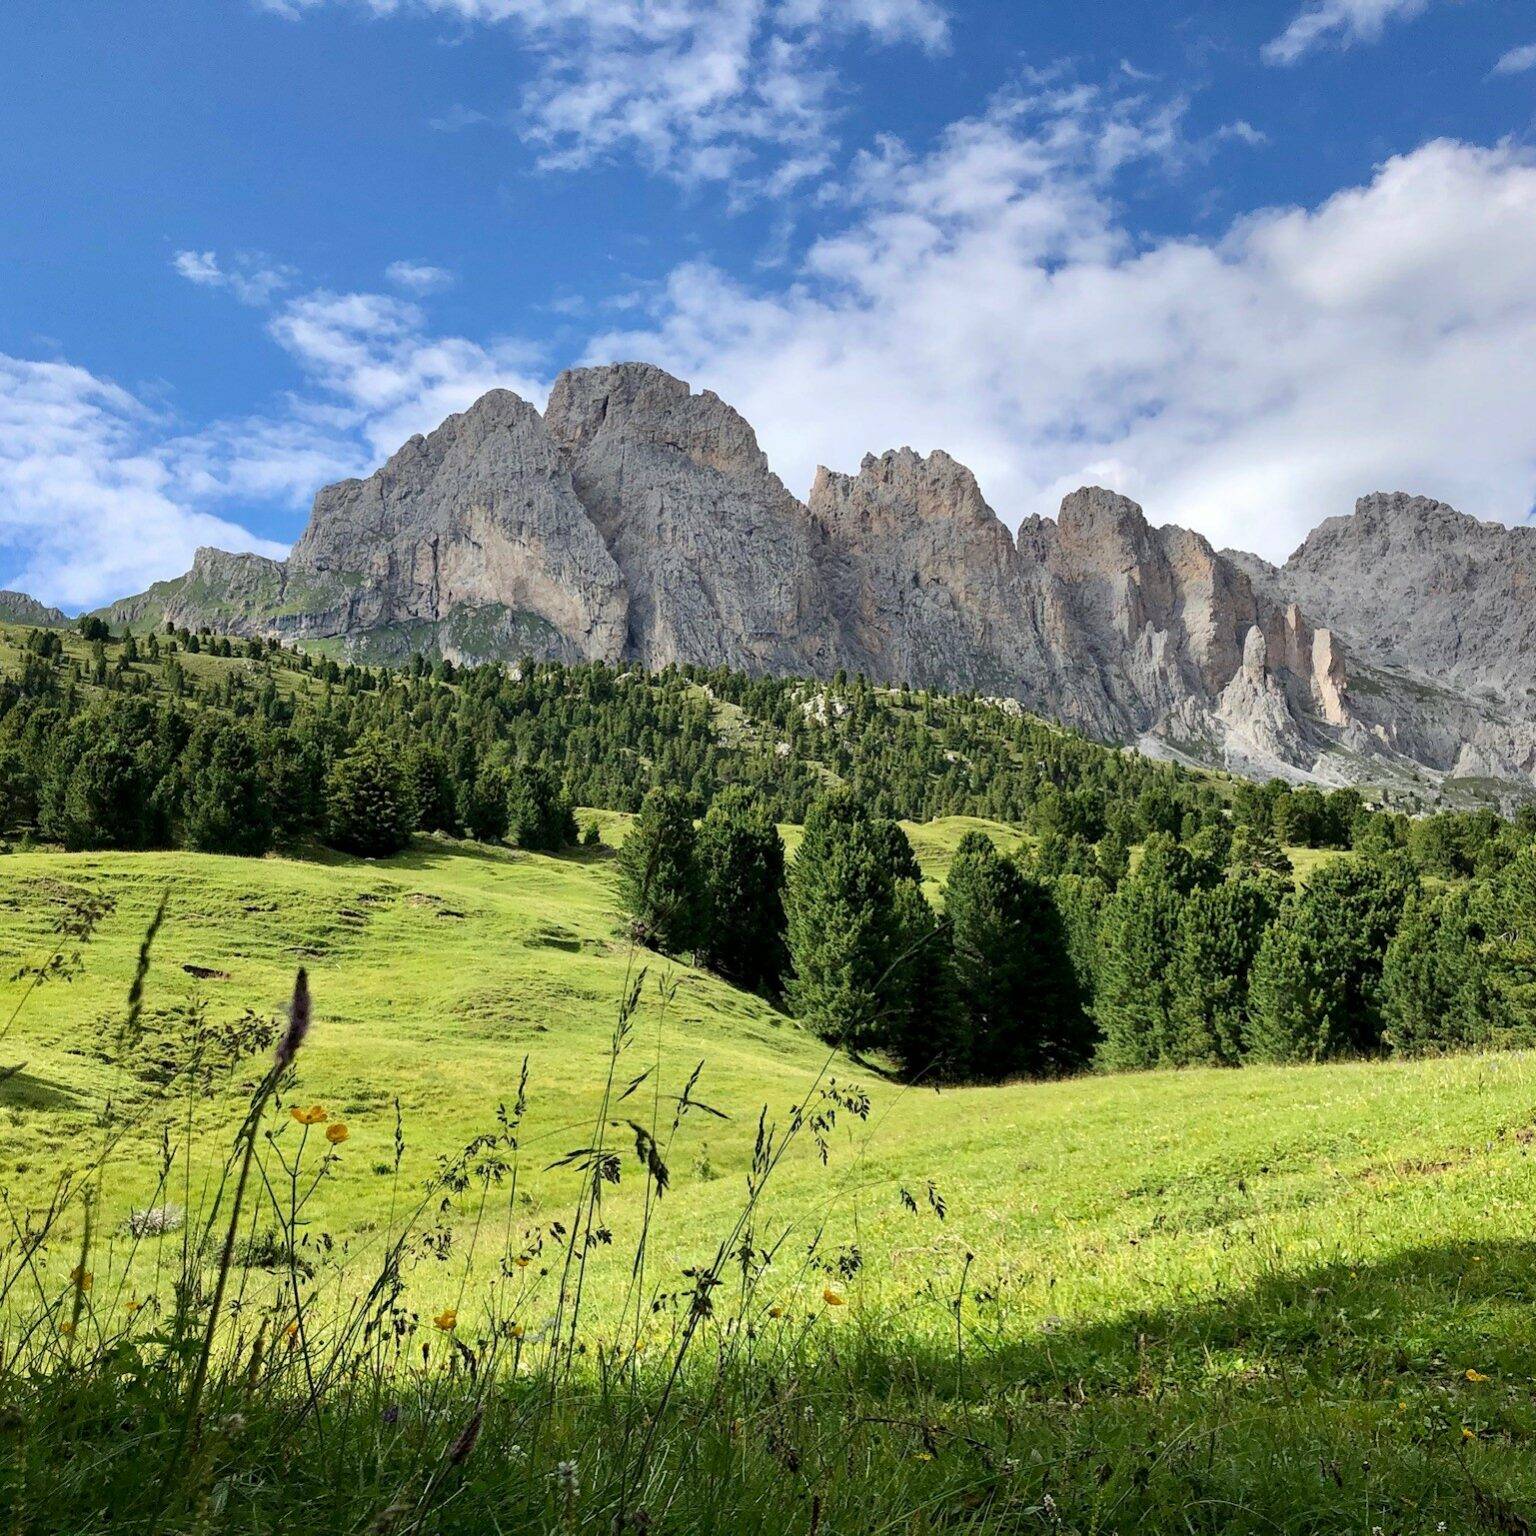 Saftig grüne Wiesenhänge umgeben die schroffen Bergspitzen im Naturpark Puez-Geisler in Südtirol.